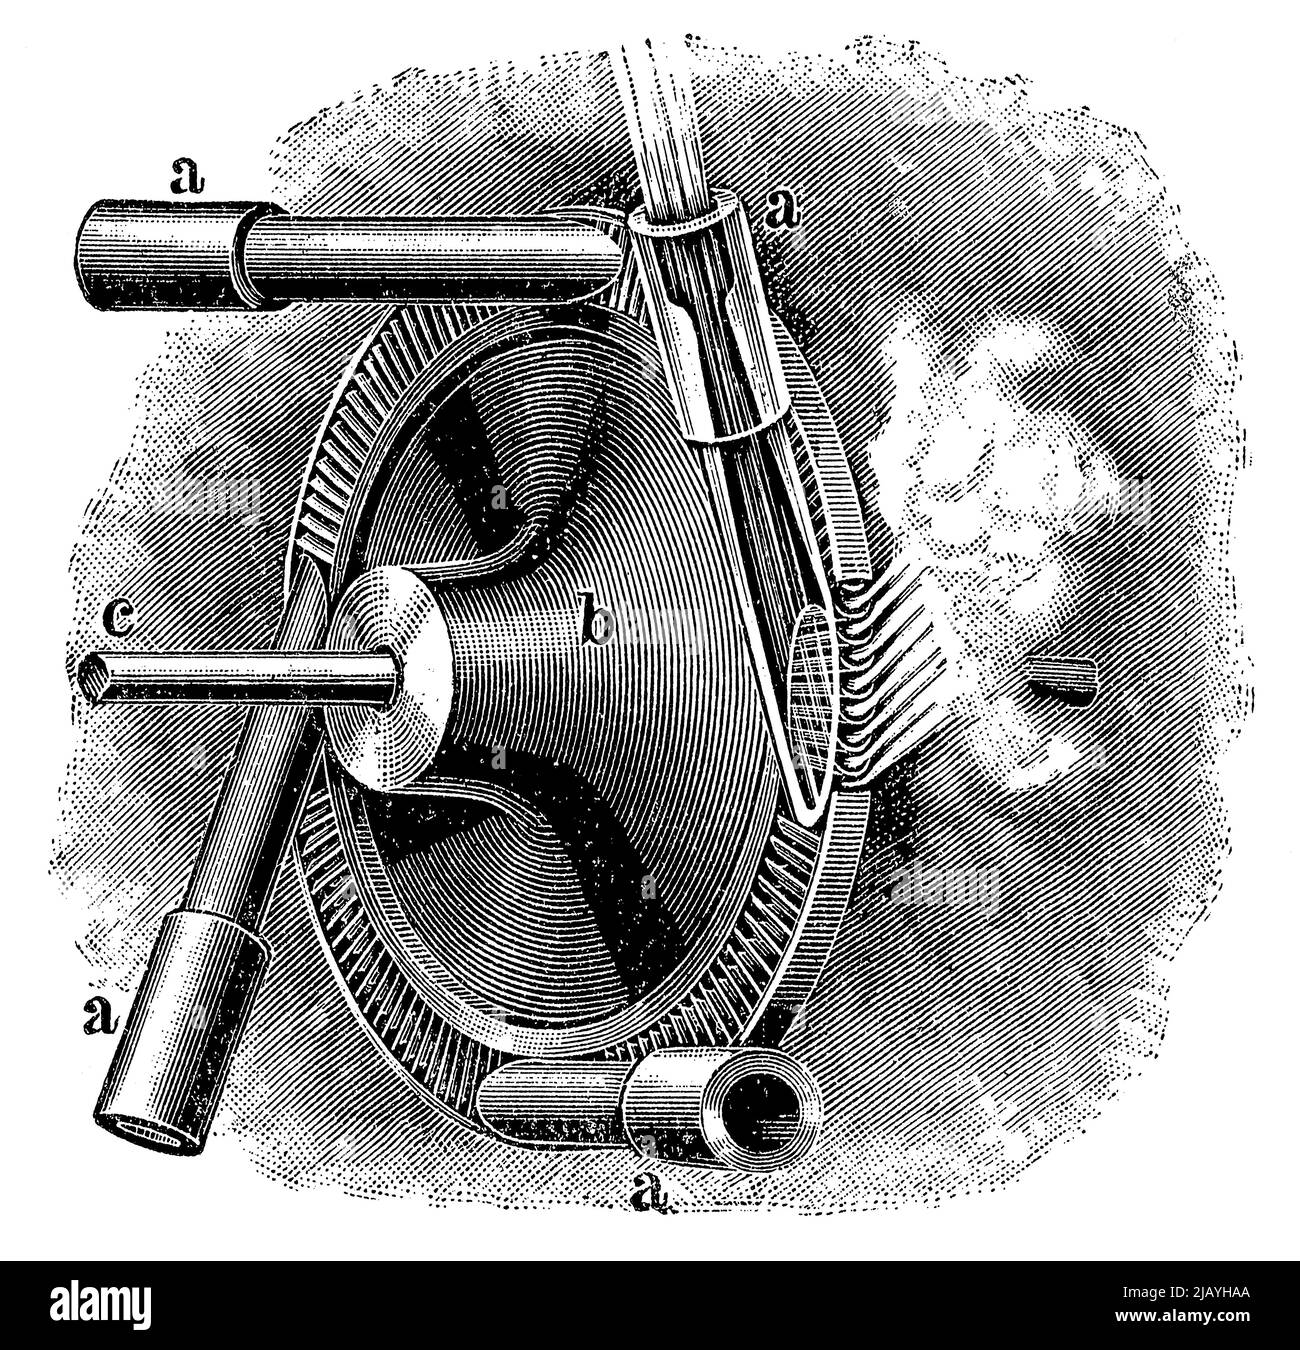 Girante e ugelli di una turbina a vapore de Laval. Pubblicazione del libro 'Meyers Konversations-Lexikon', Volume 2, Lipsia, Germania, 1910 Foto Stock